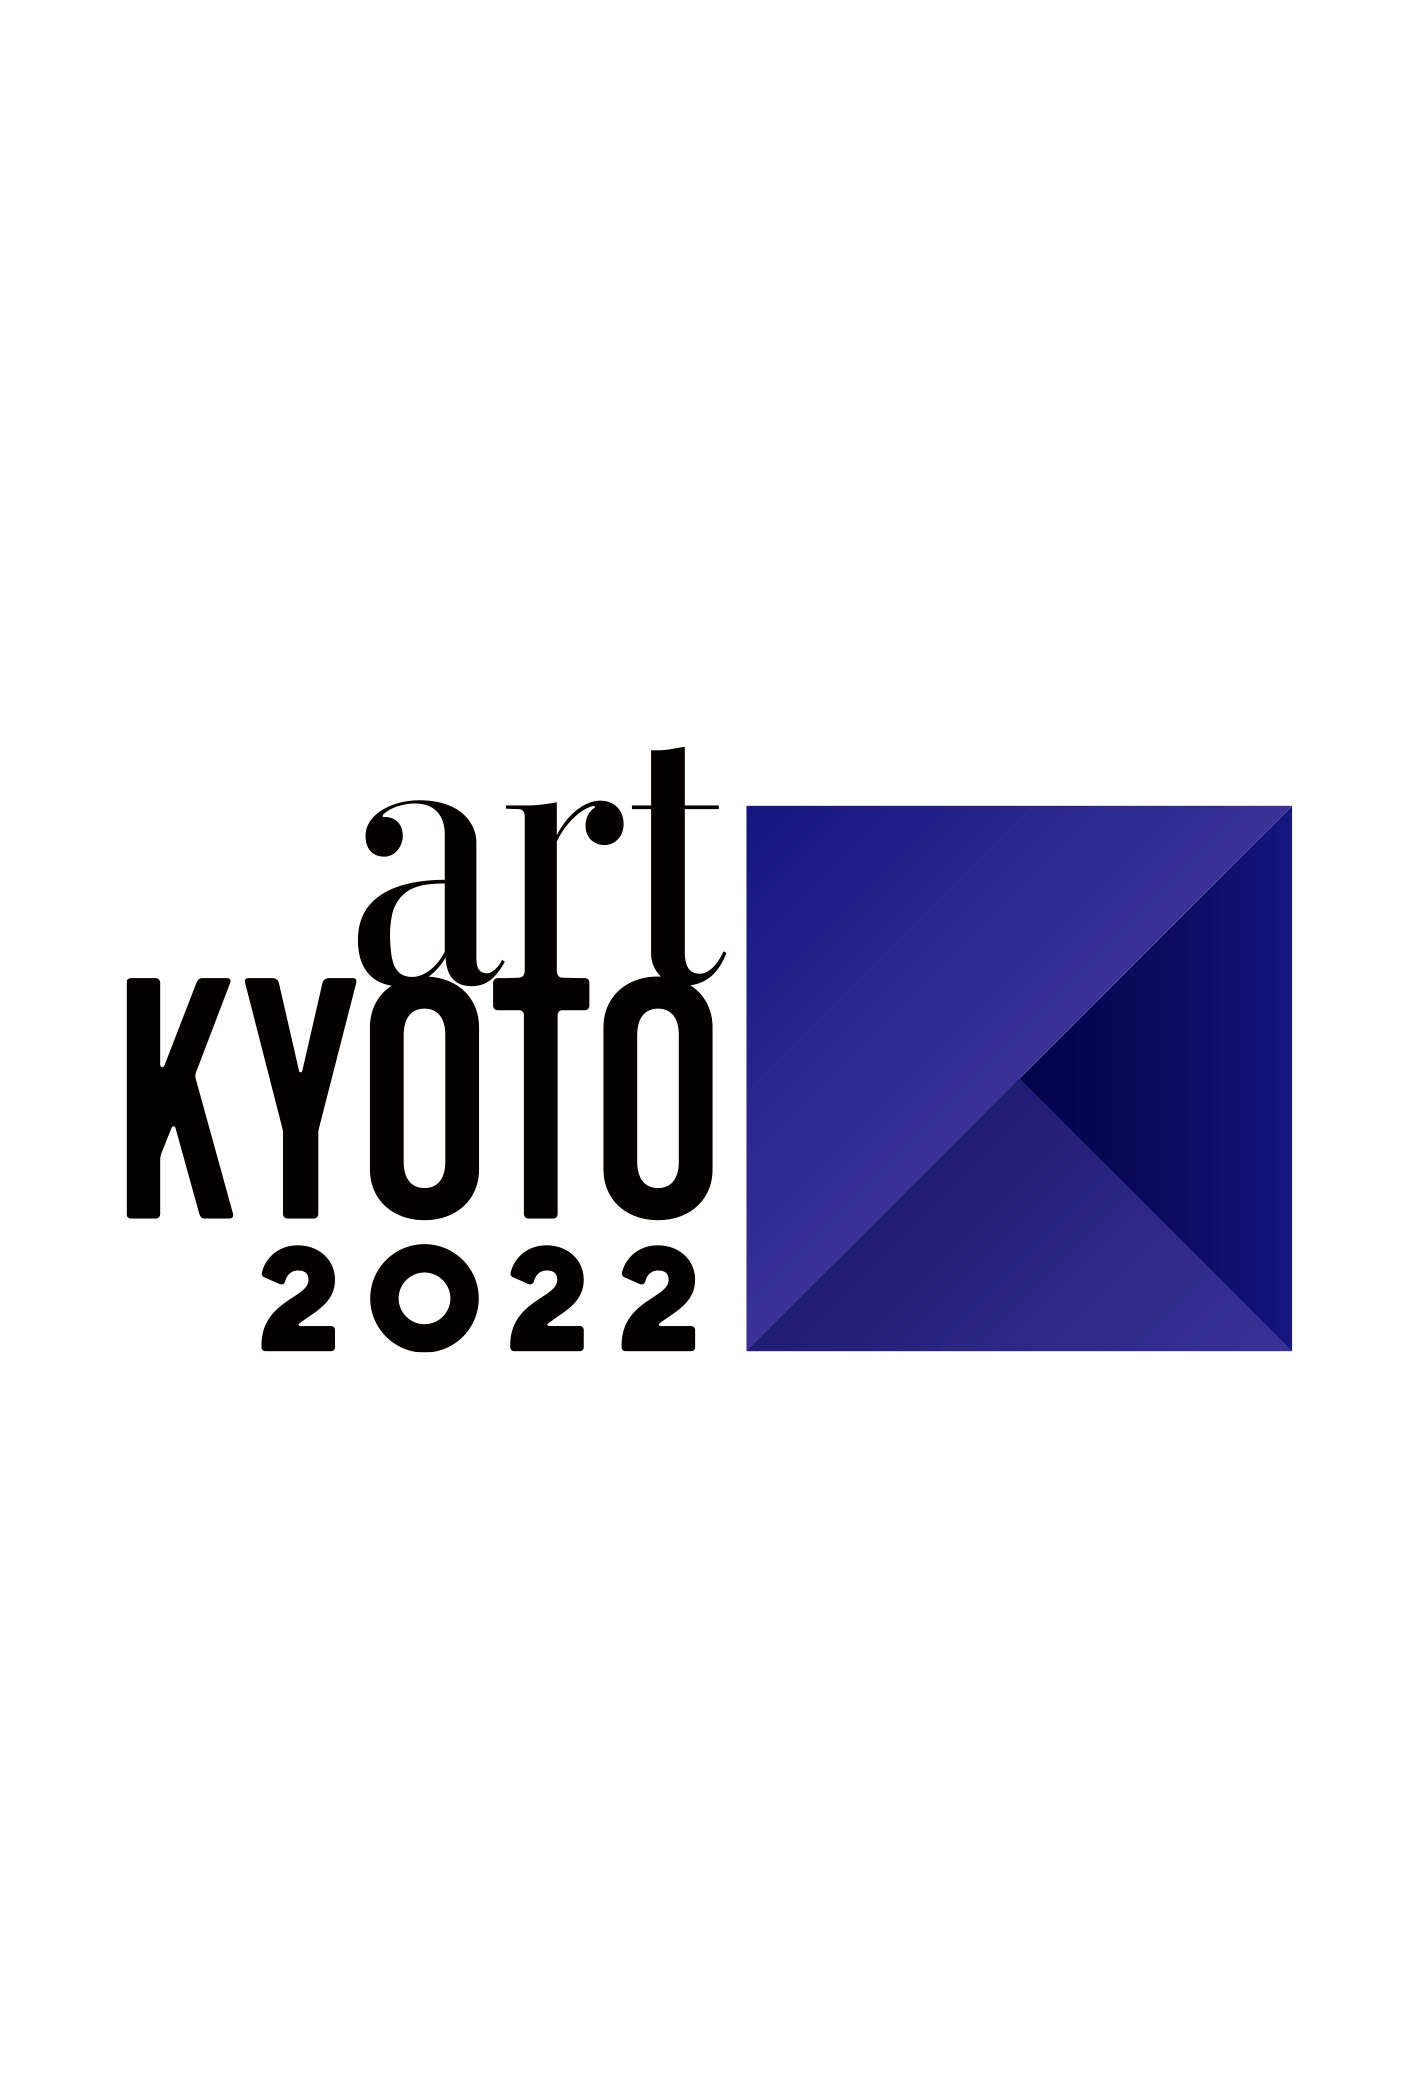 世界遺産の京都二条城にて開催の国際的アートフェアartKYOTO2022に落合陽一が出展